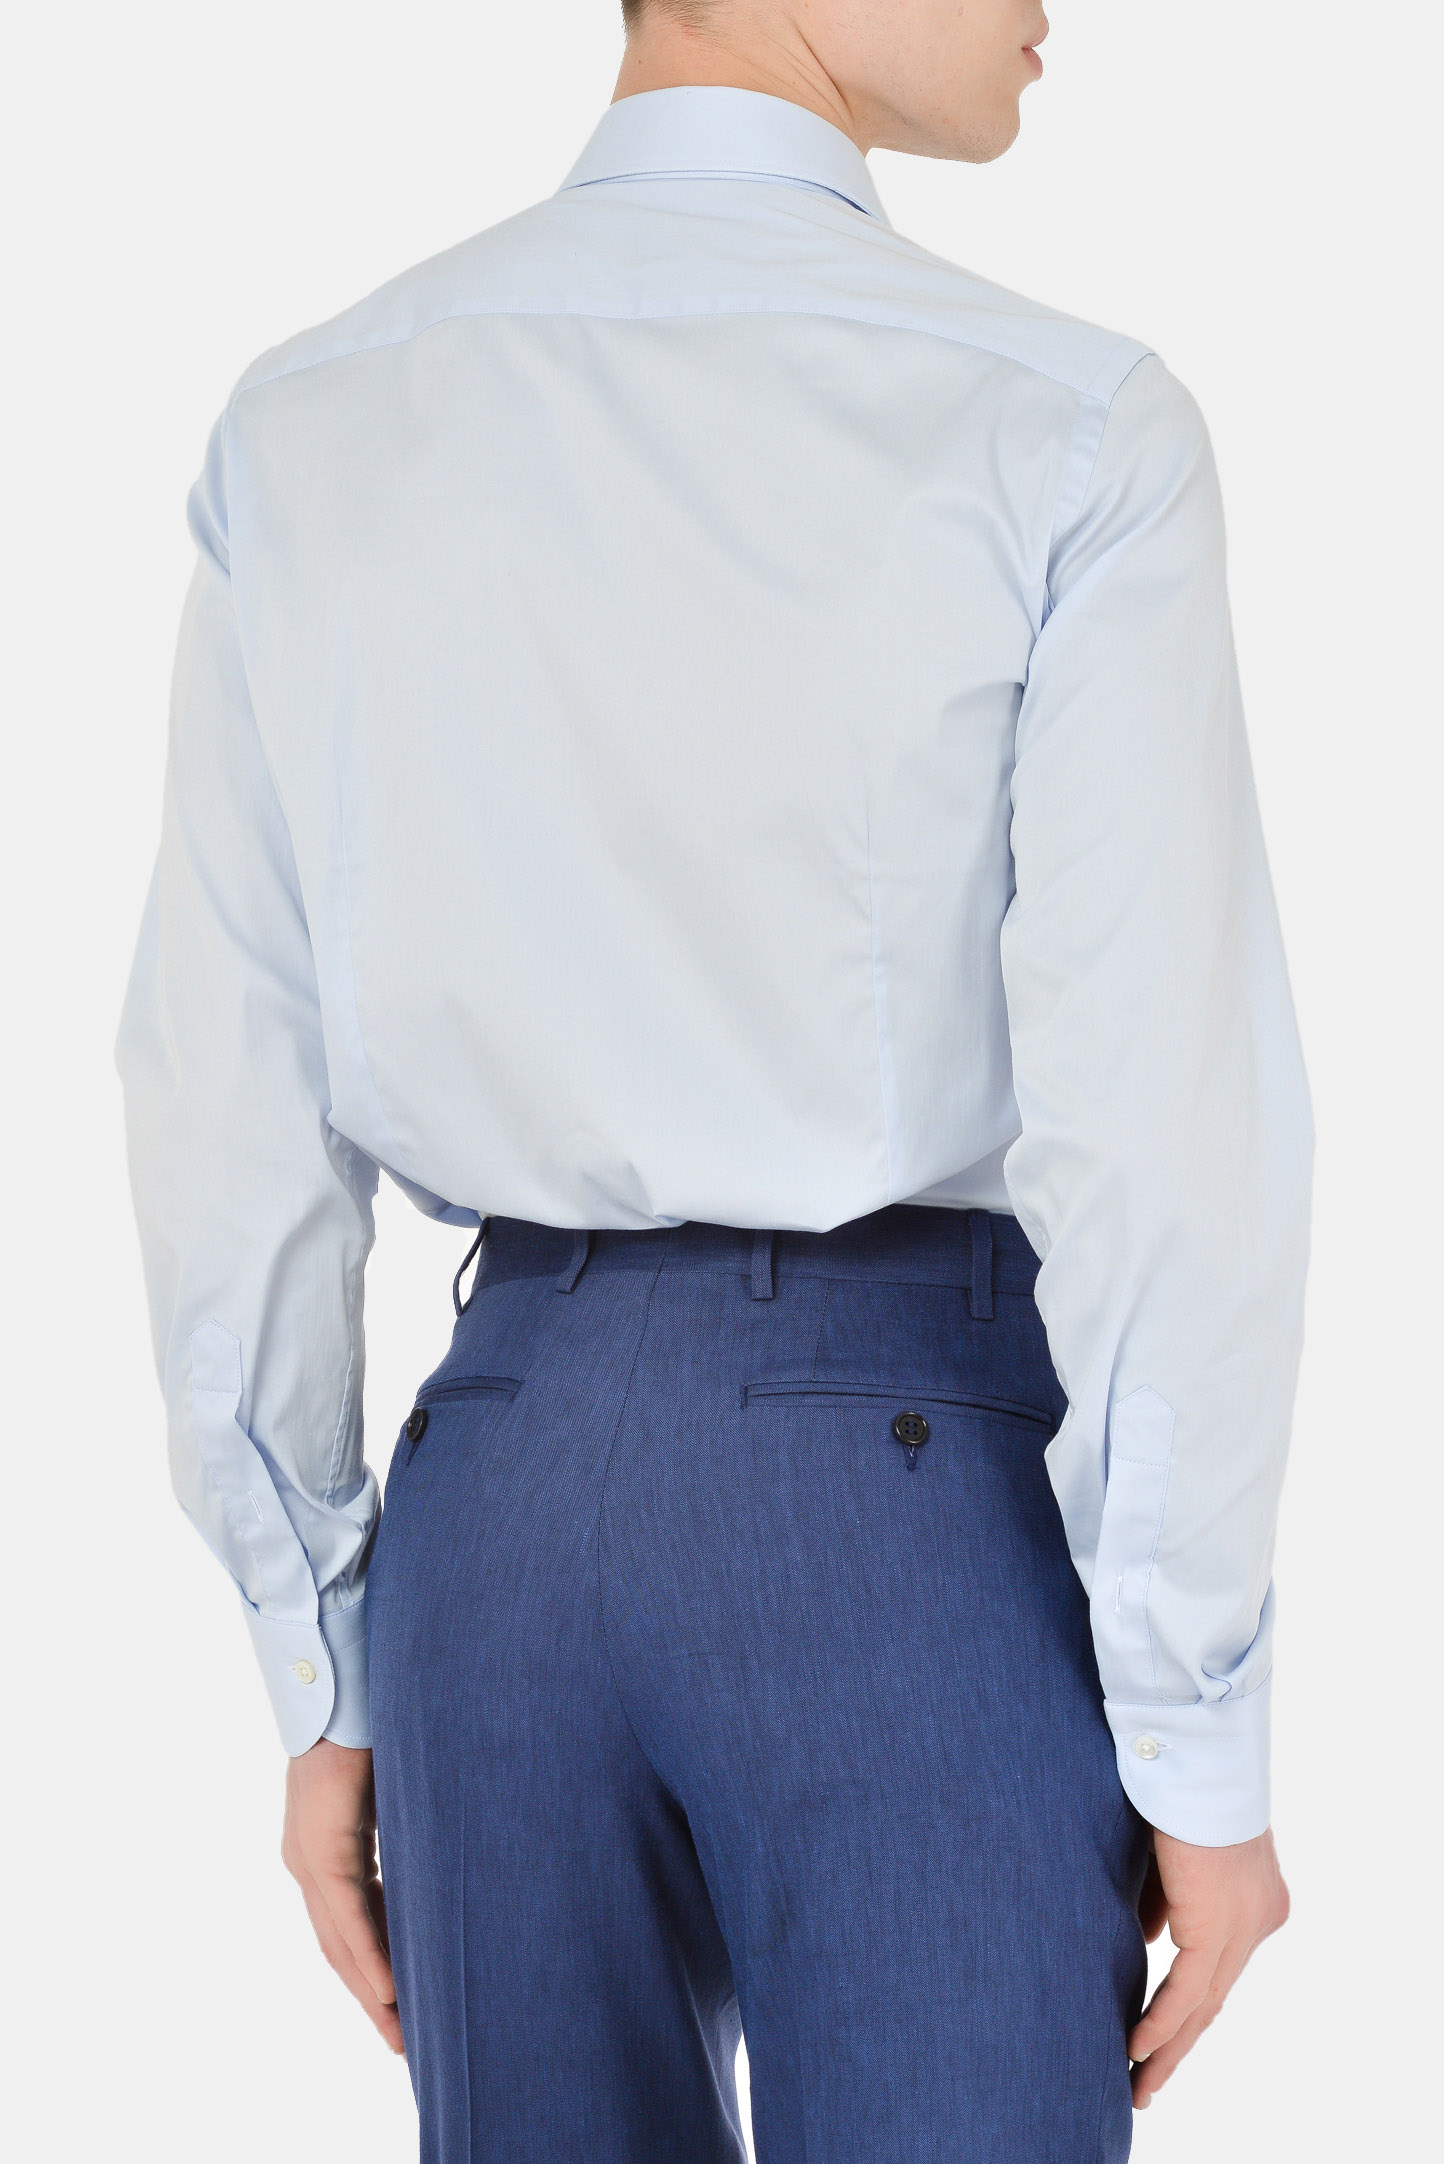 Рубашка CANALI GA00103/401, цвет: Голубой, Мужской